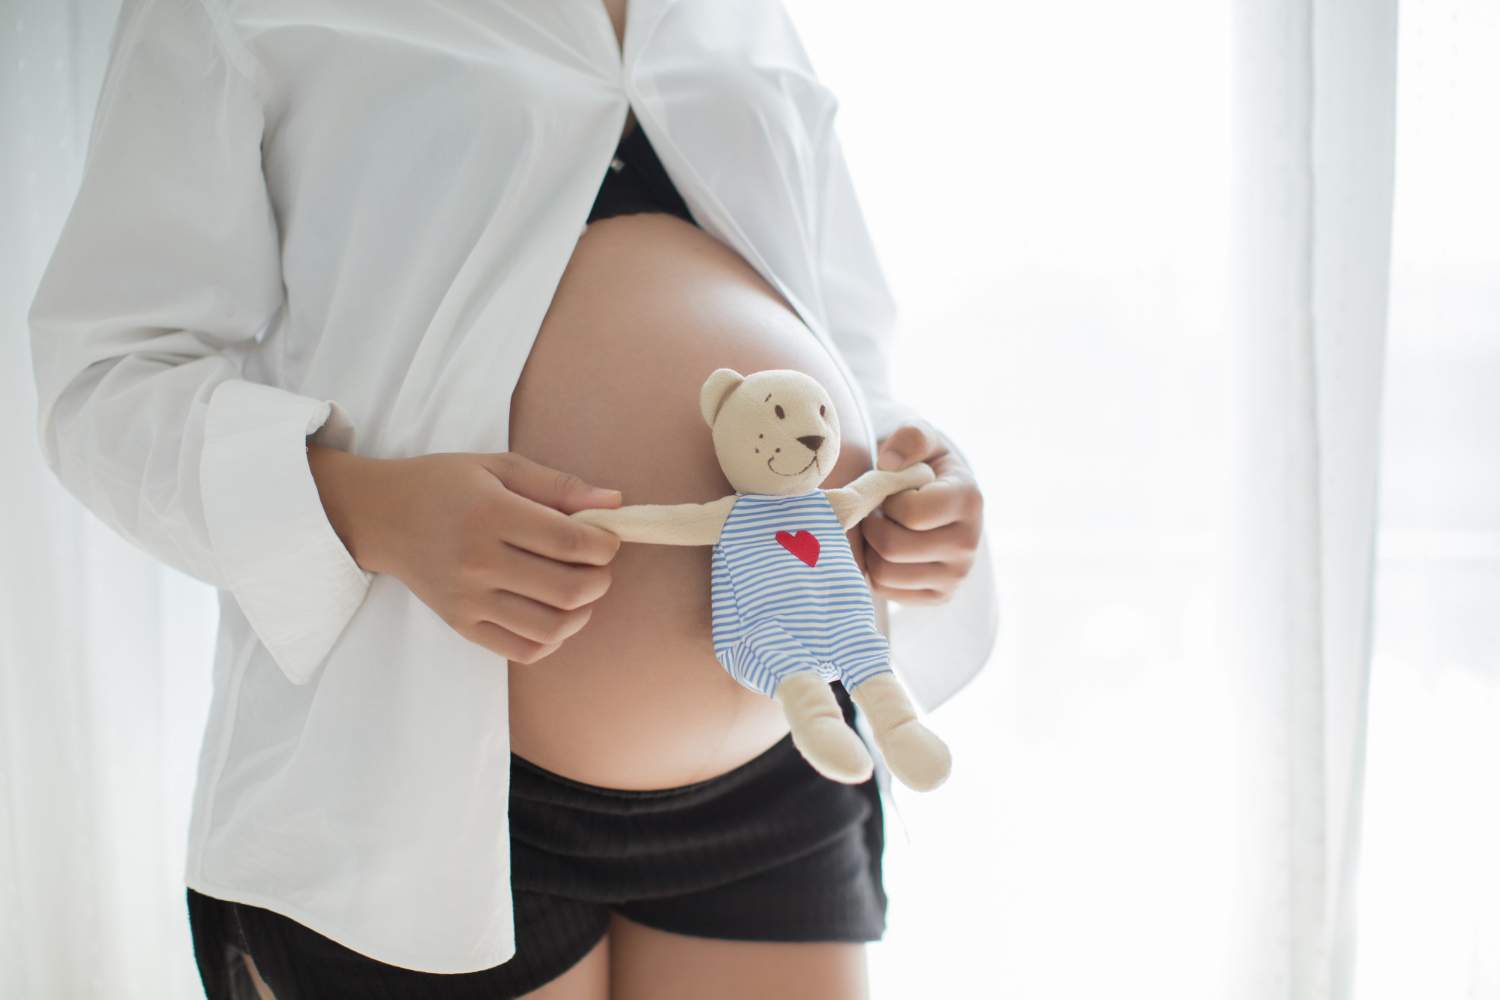 seguro medico para embarazadas